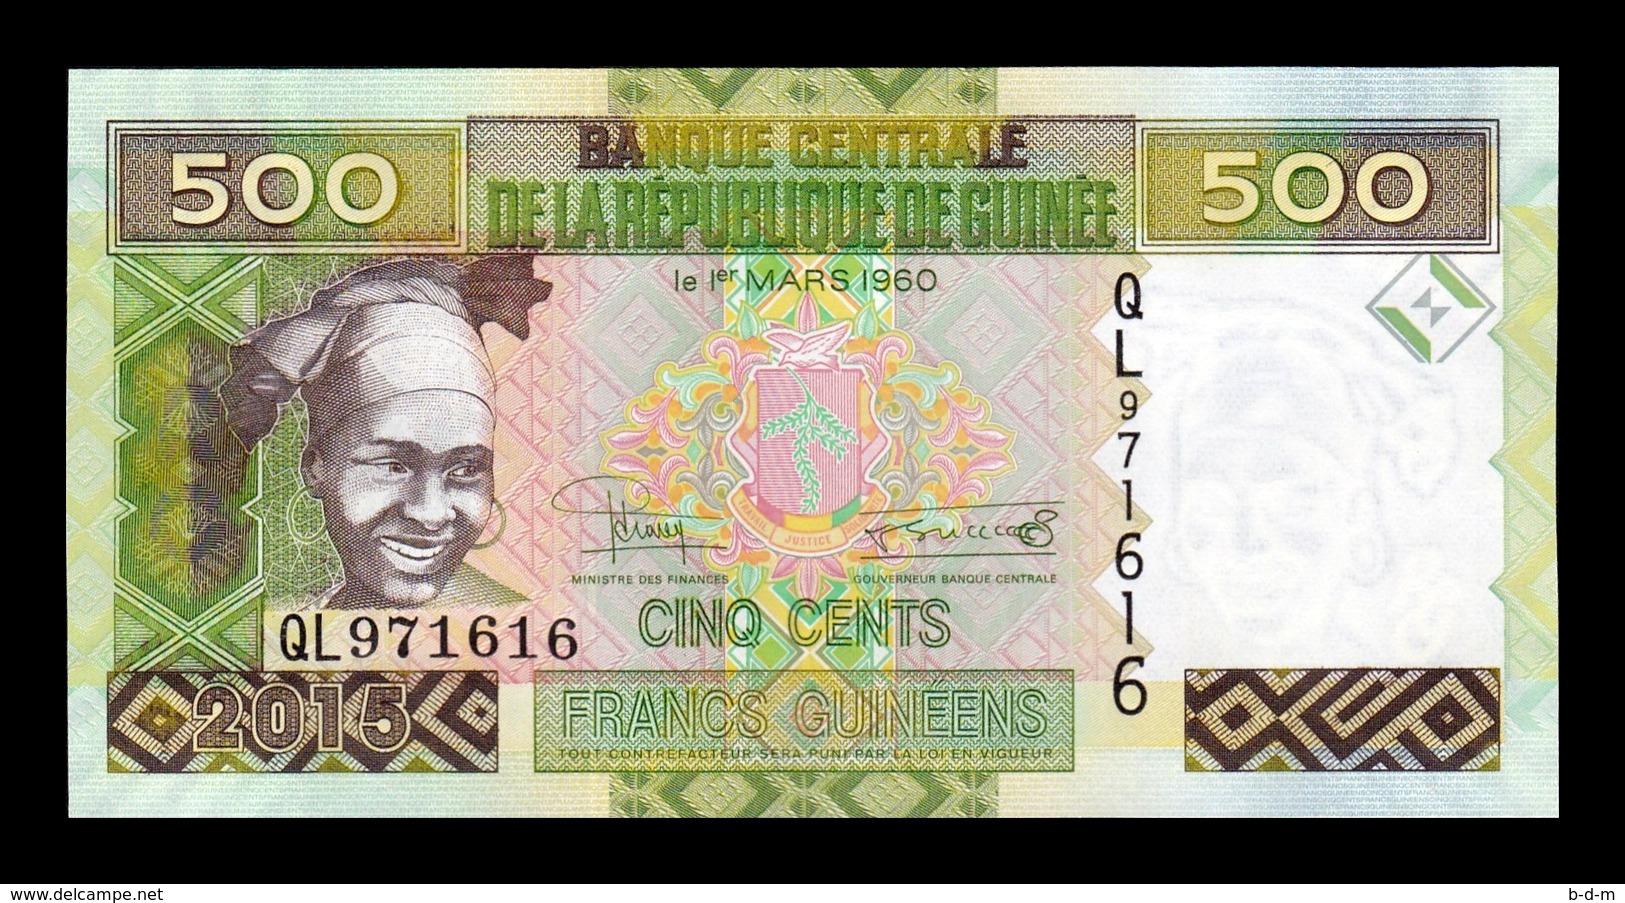 Guinea Lot Bundle 10 Banknotes 500 Francs 2015 Pick 47 SC UNC - Guinea